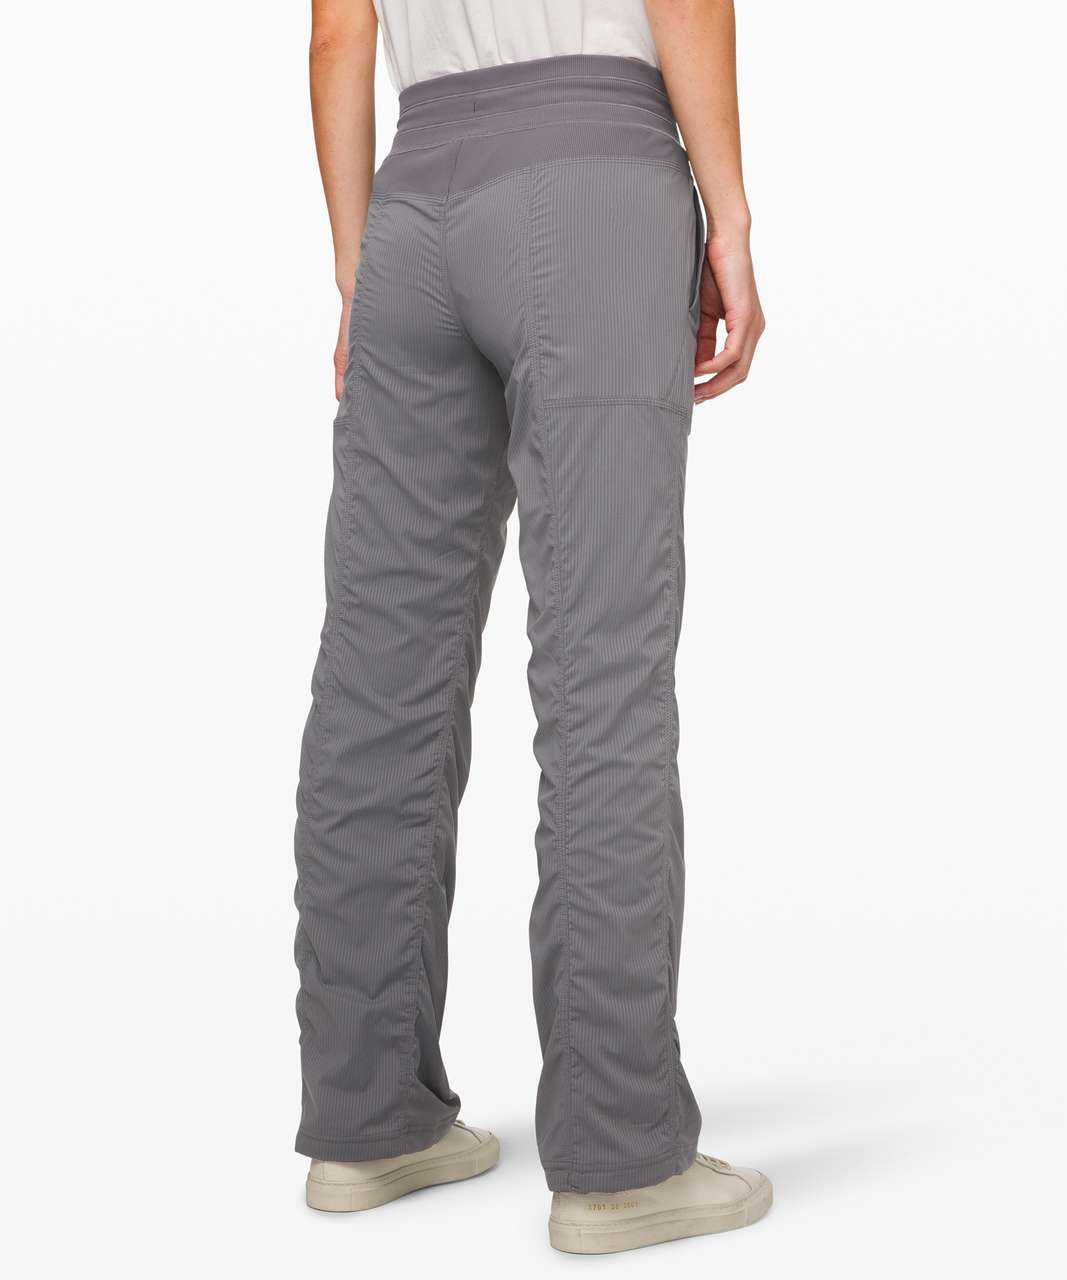 Lululemon Dance Studio Pants III Unlined size 4 Gray - $56 (52% Off Retail)  - From krystal